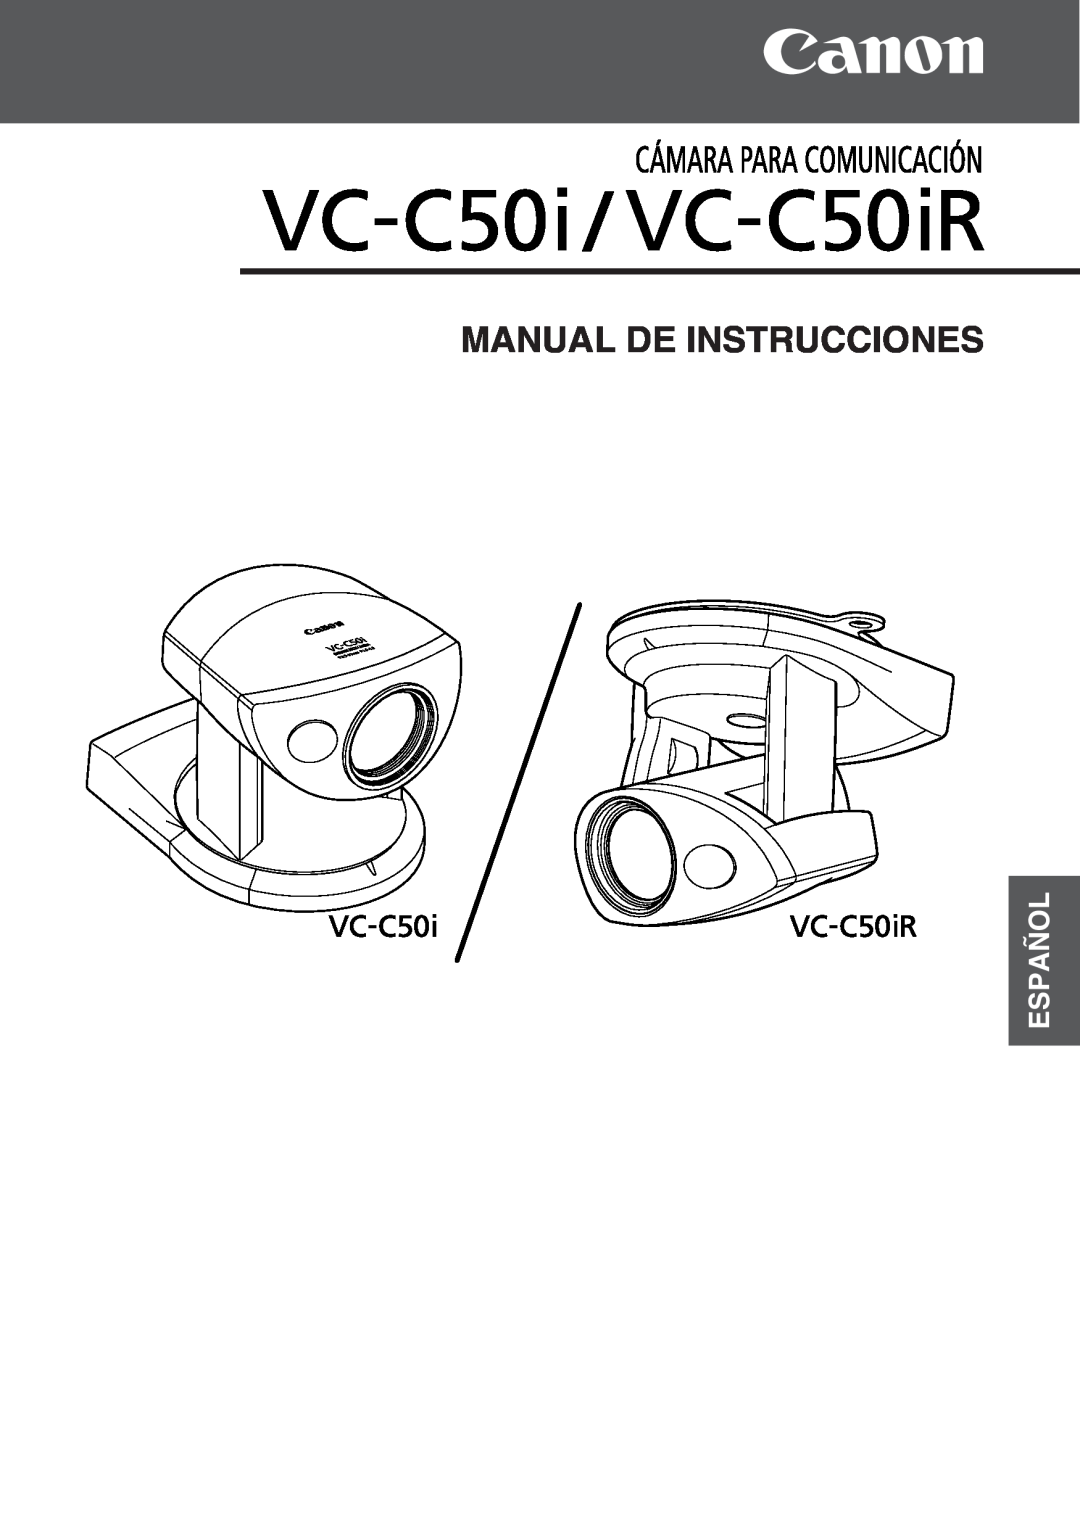 Canon VC-C50IR, VC-C50i instruction manual Manual De Instrucciones, Español 